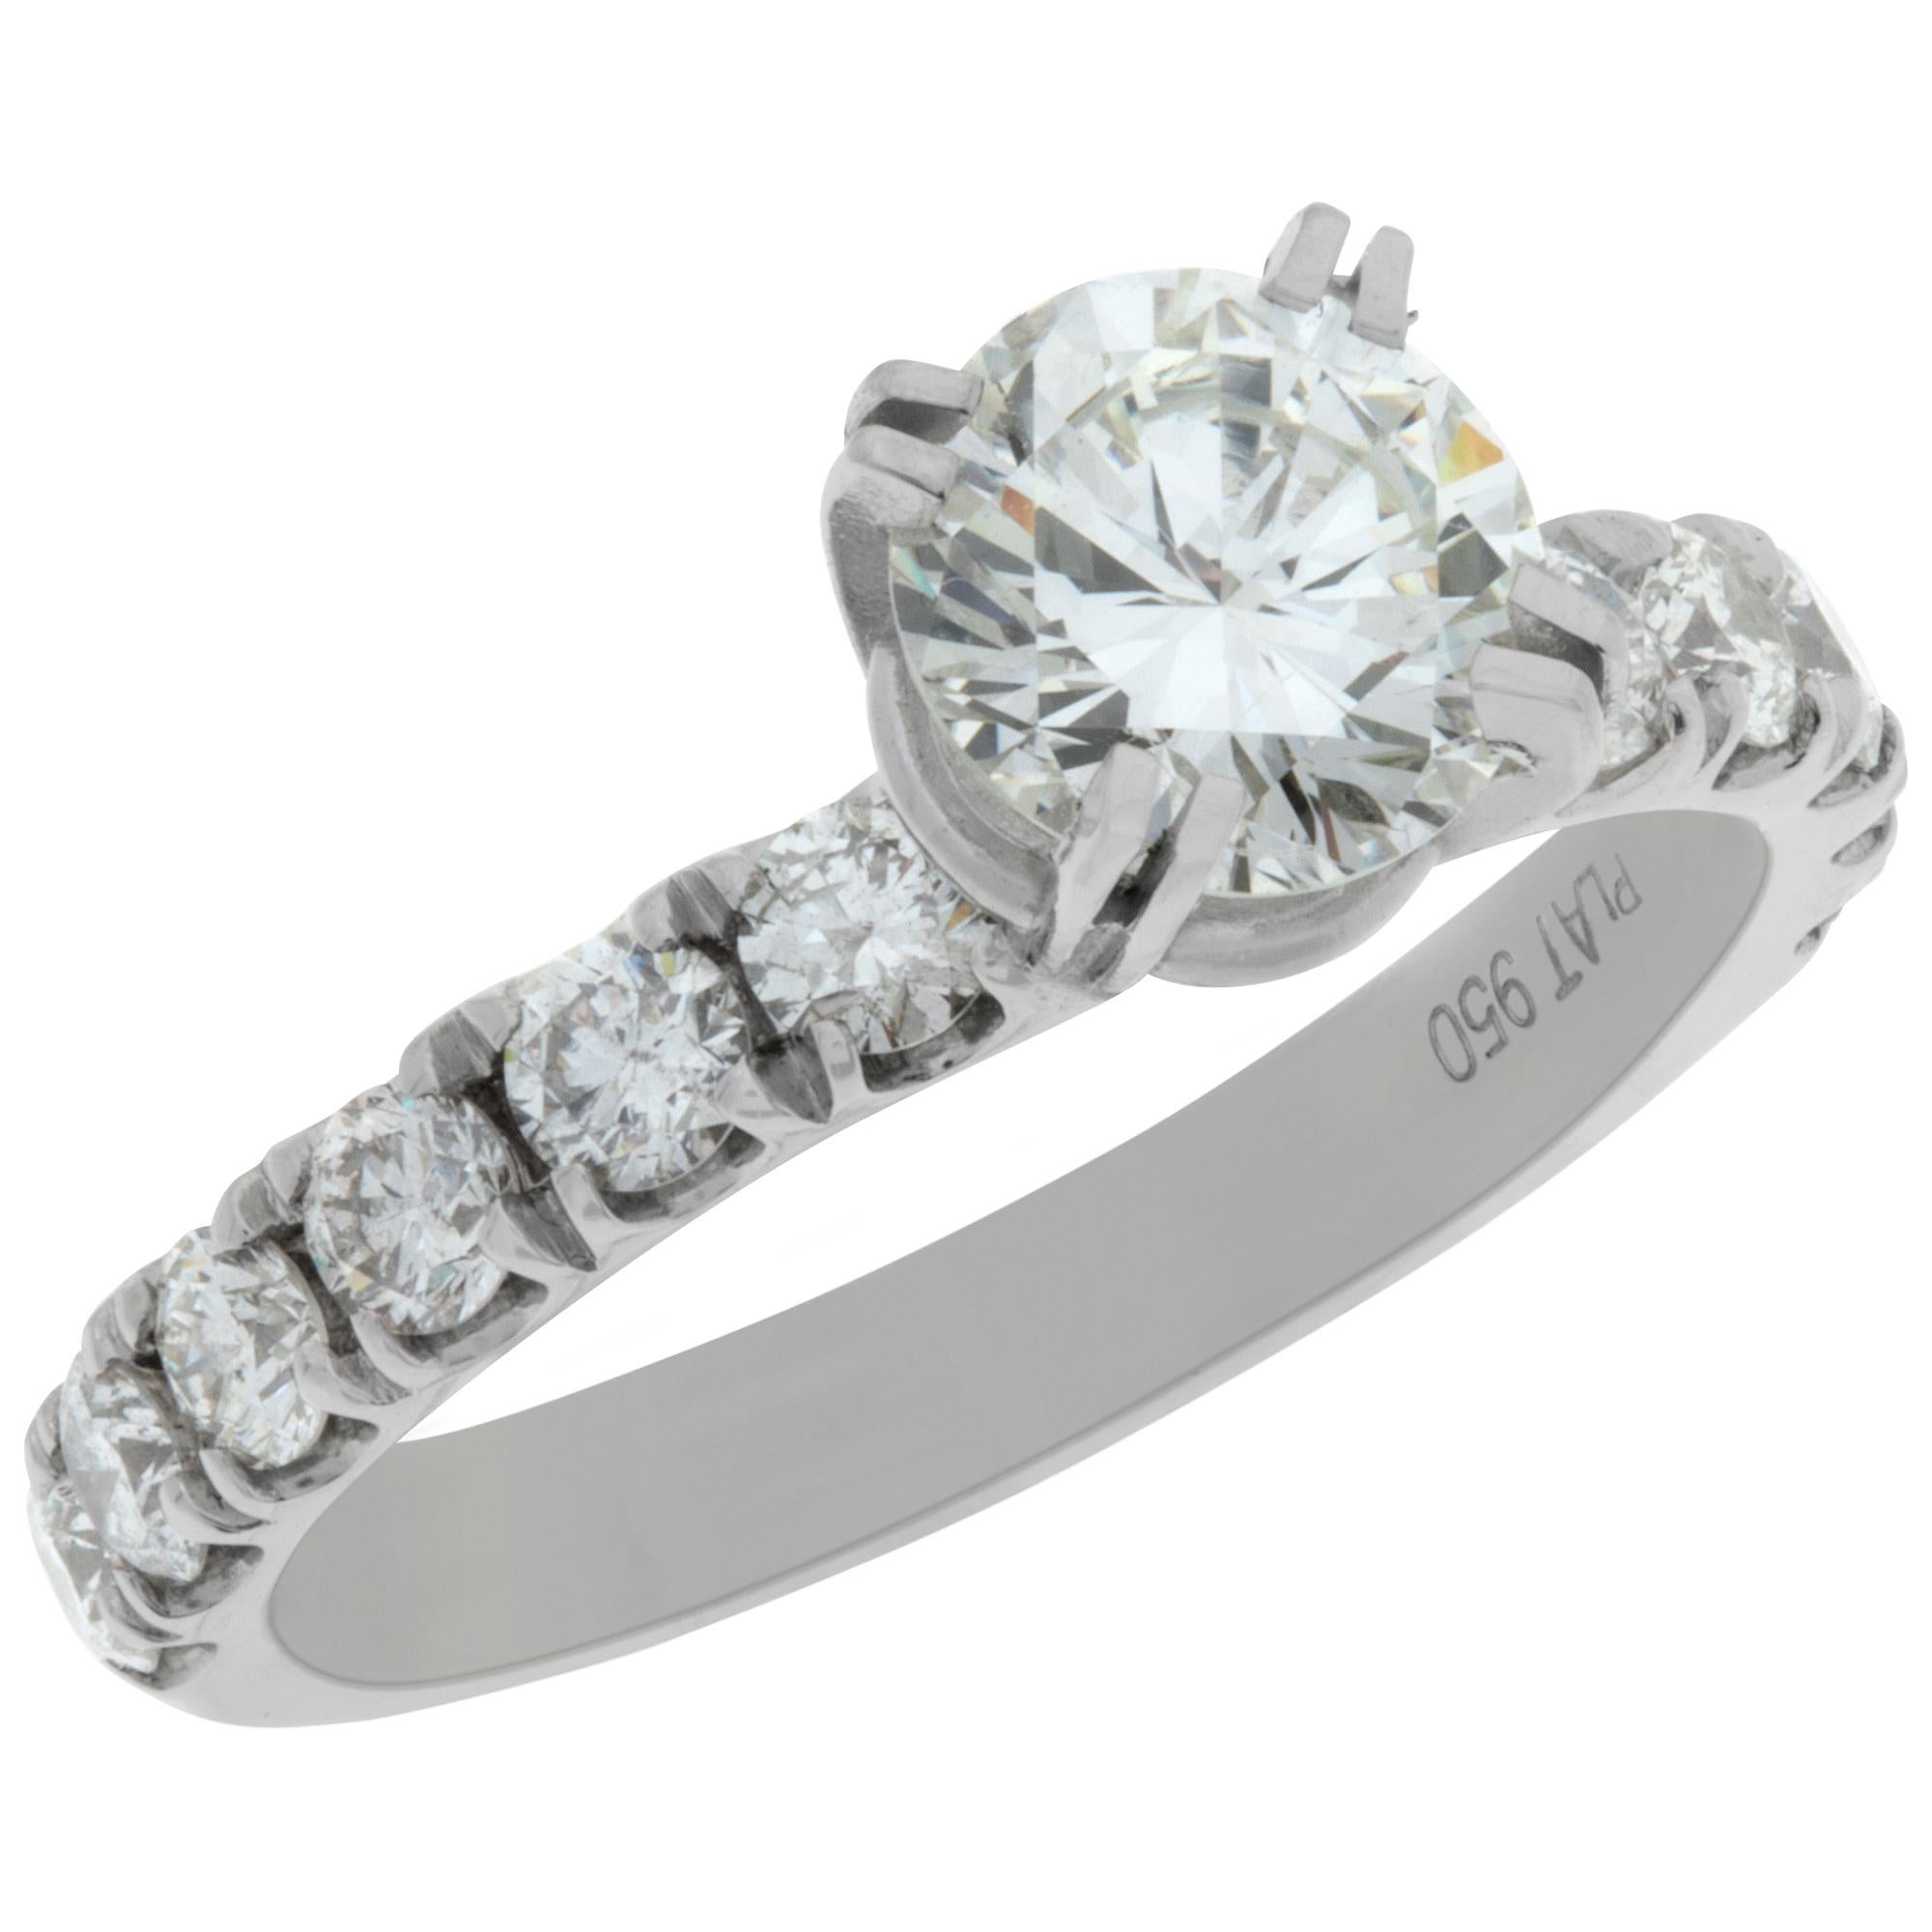 Brilliant Cut Platinum GIA certified round brilliant cut diamond ring For Sale